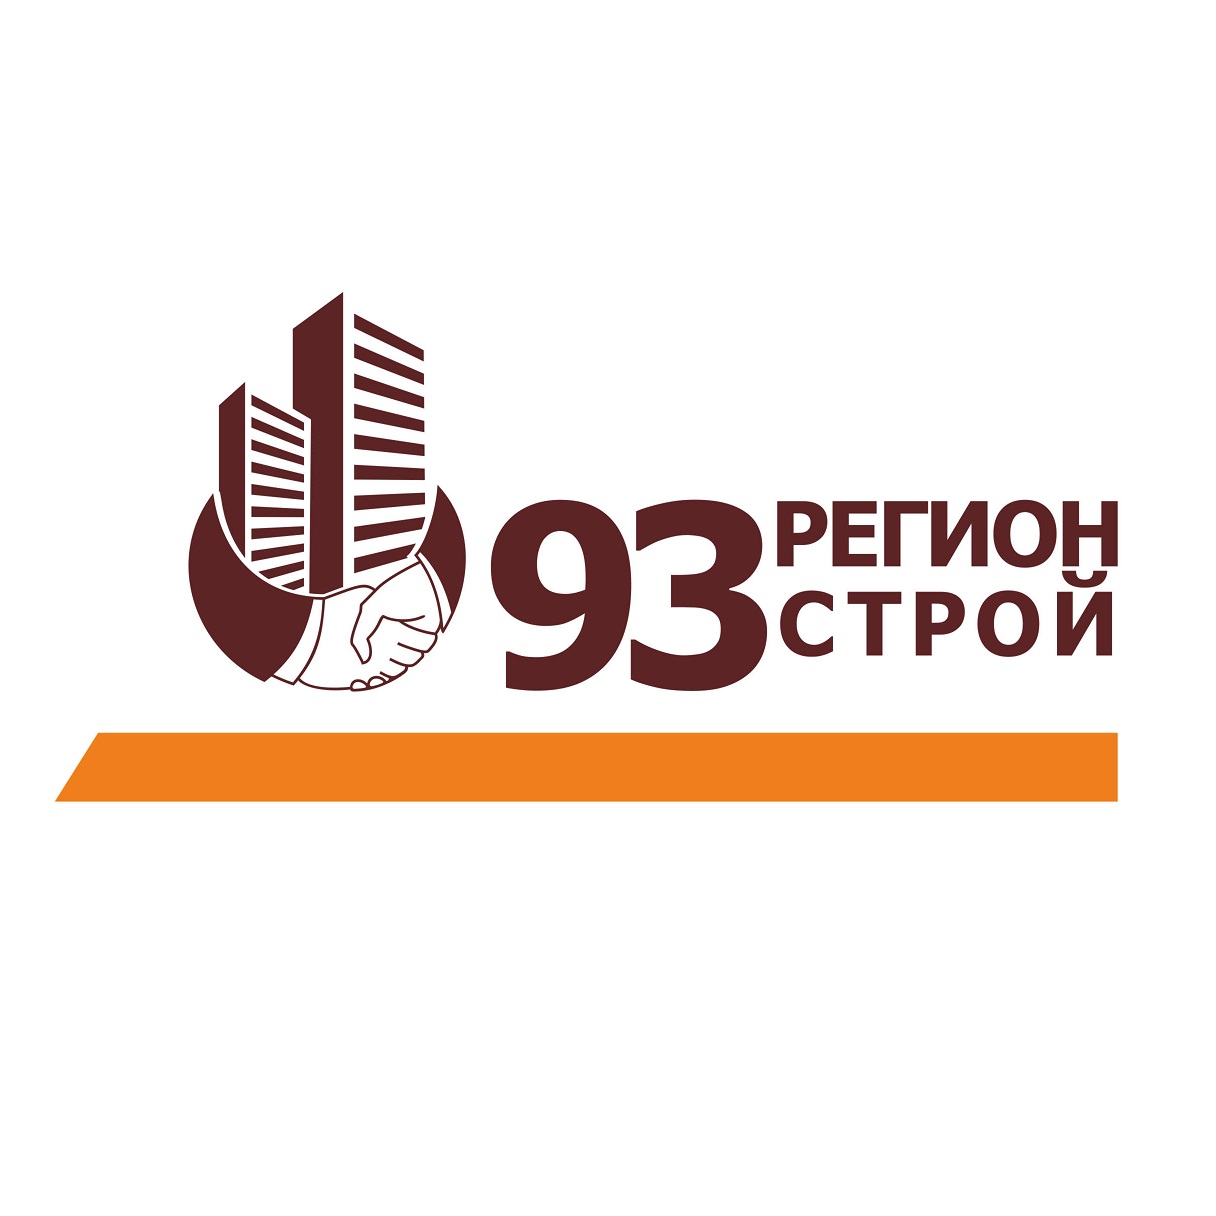 Фото / логотип АН 93 Регион-Строй, Краснодар